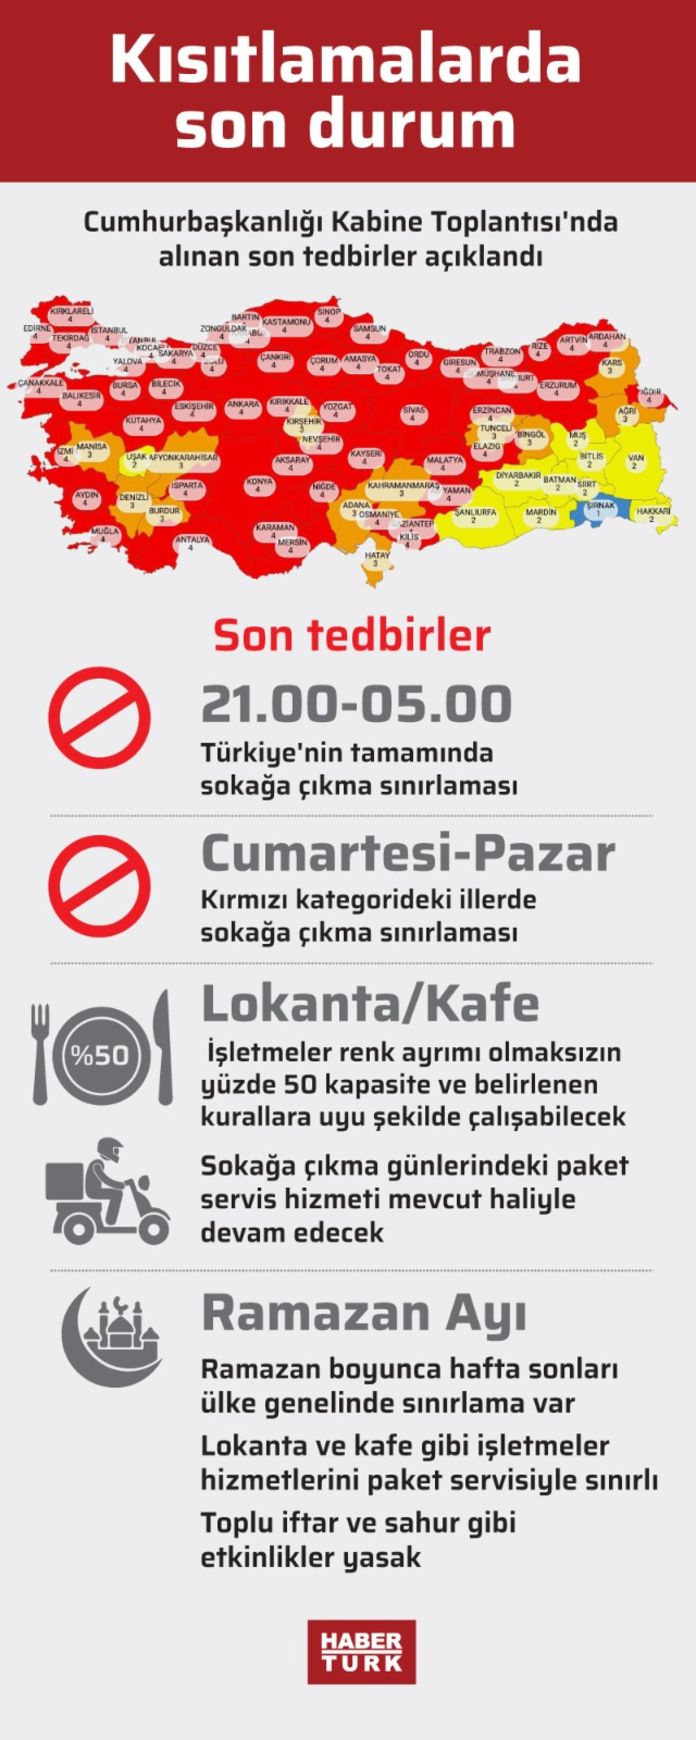 hafta sonu sokaga cikma yasagi olan iller hangileri hafta sonu yasagi ankara izmir ve istanbul da var mi gundem haberleri